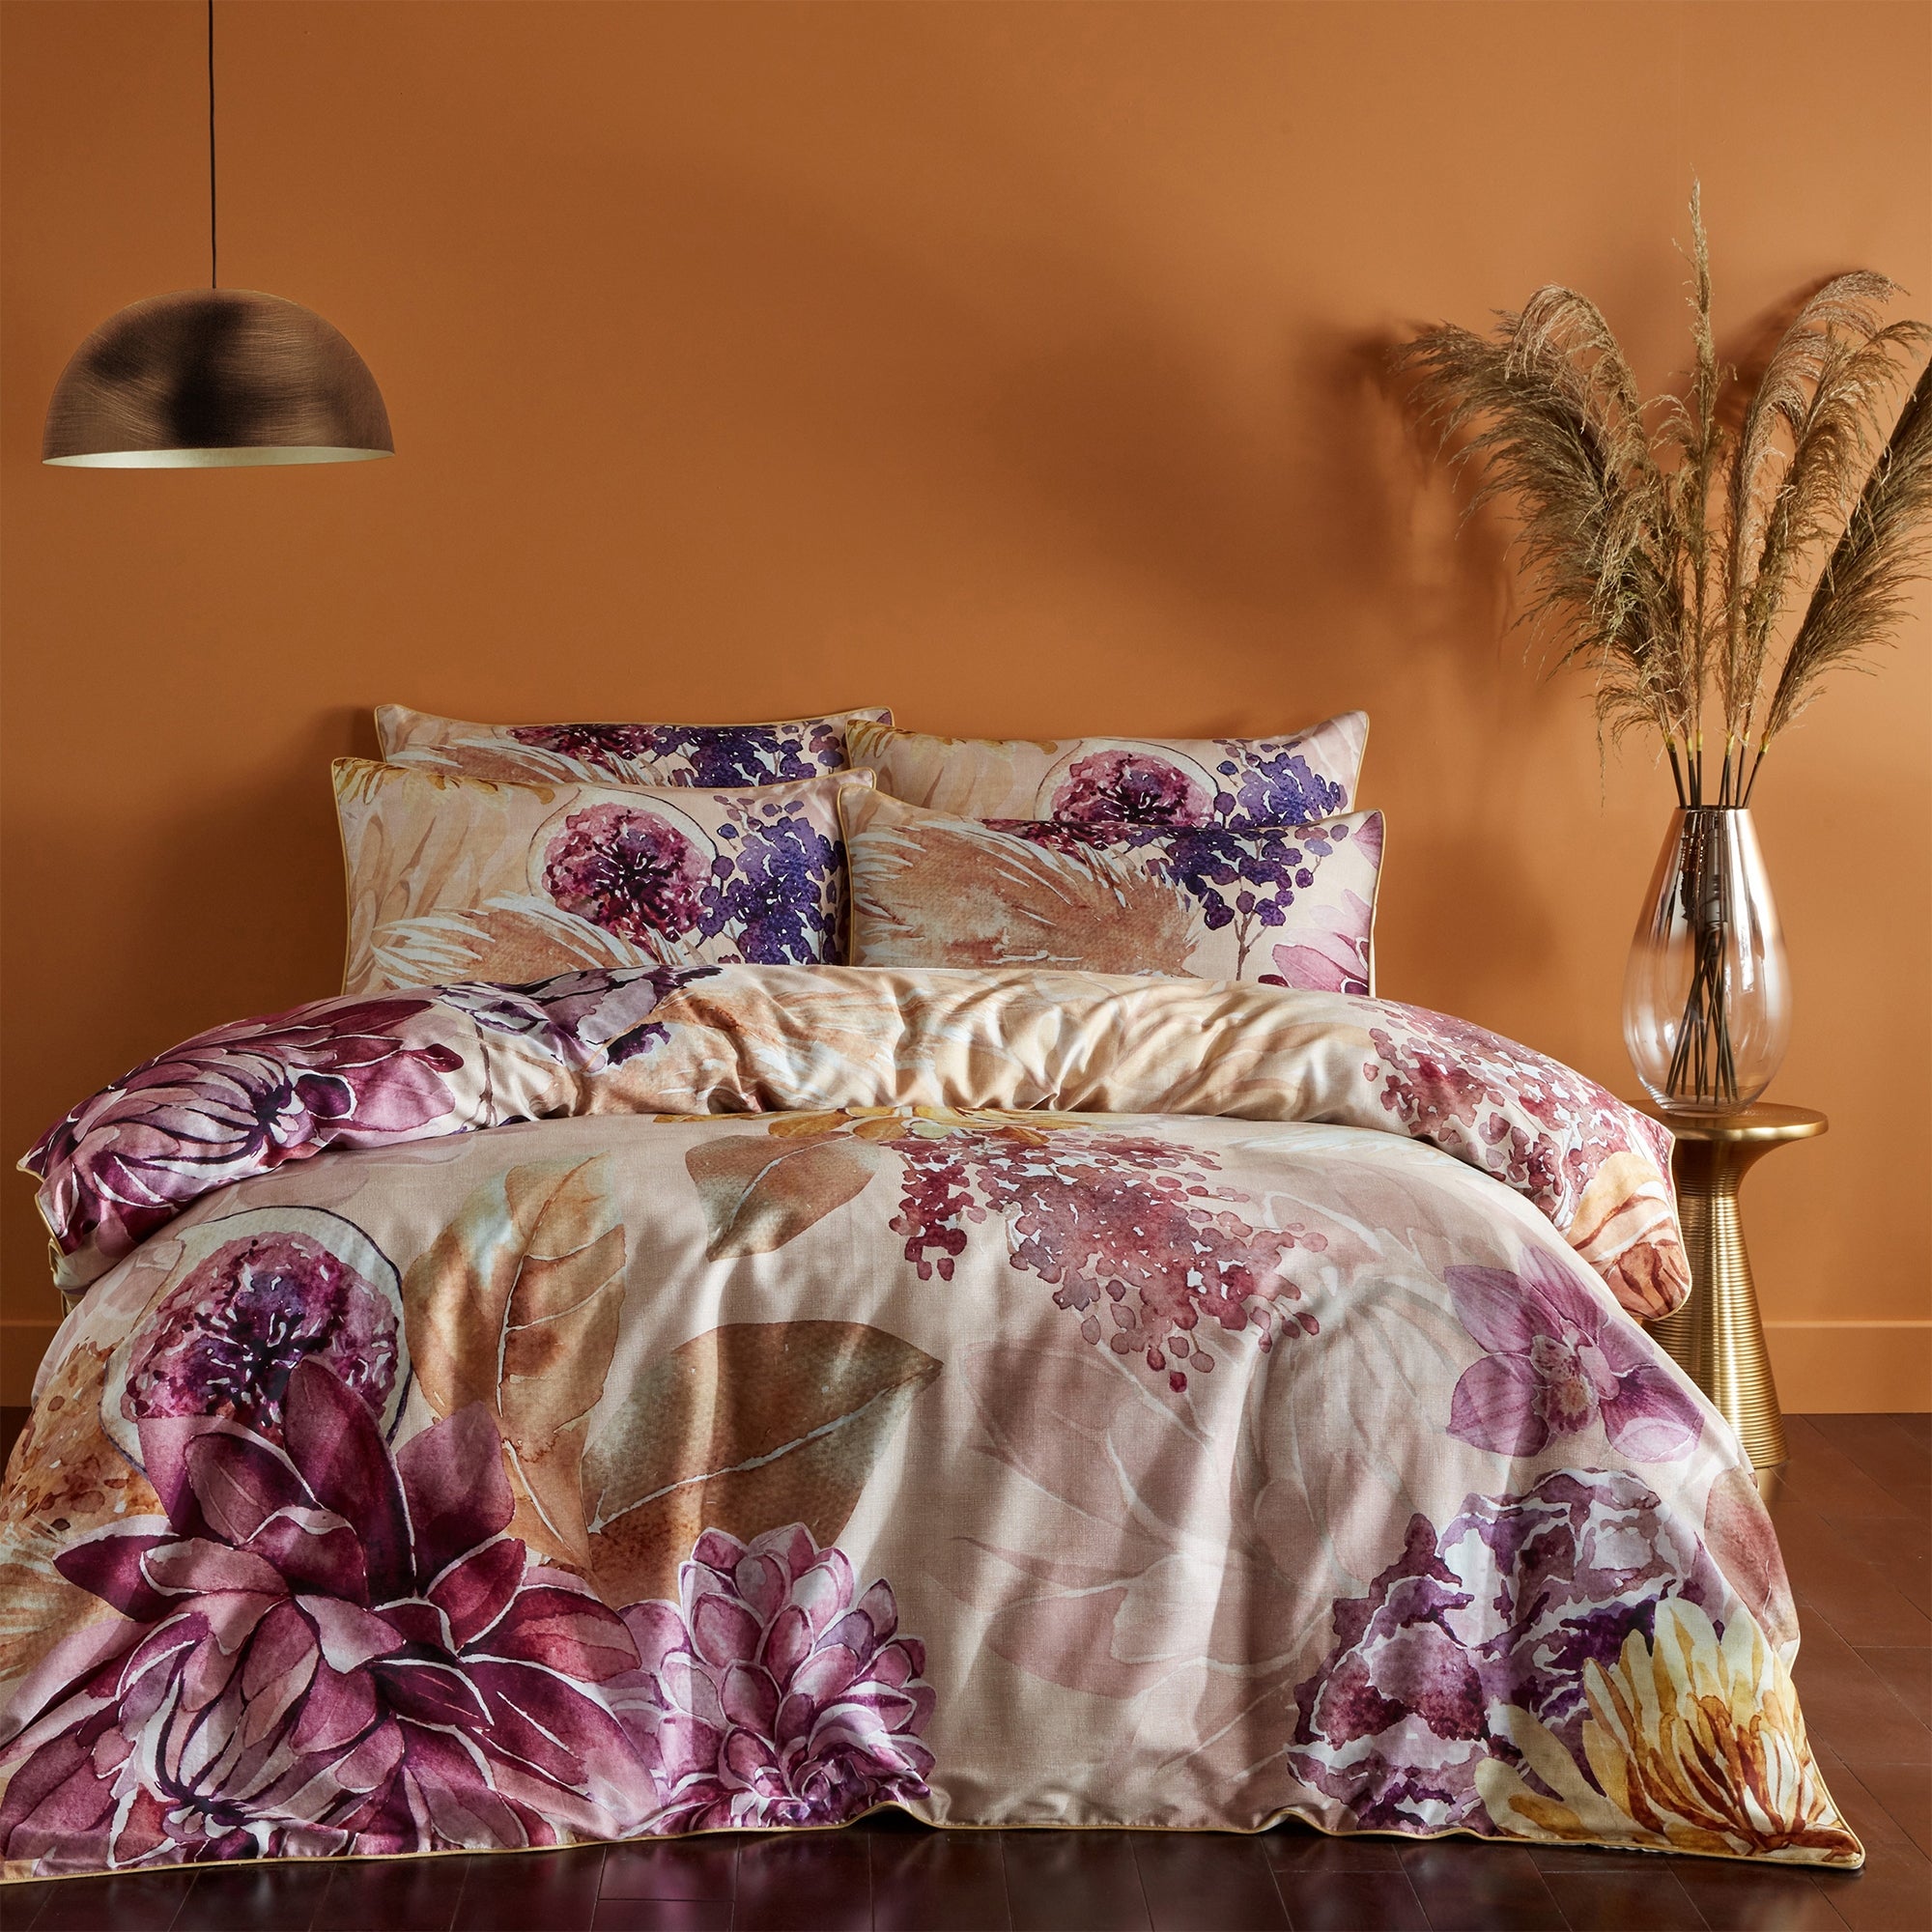 Paoletti Saffa 100 Cotton Duvet Cover And Pillowcase Set Purplebeige